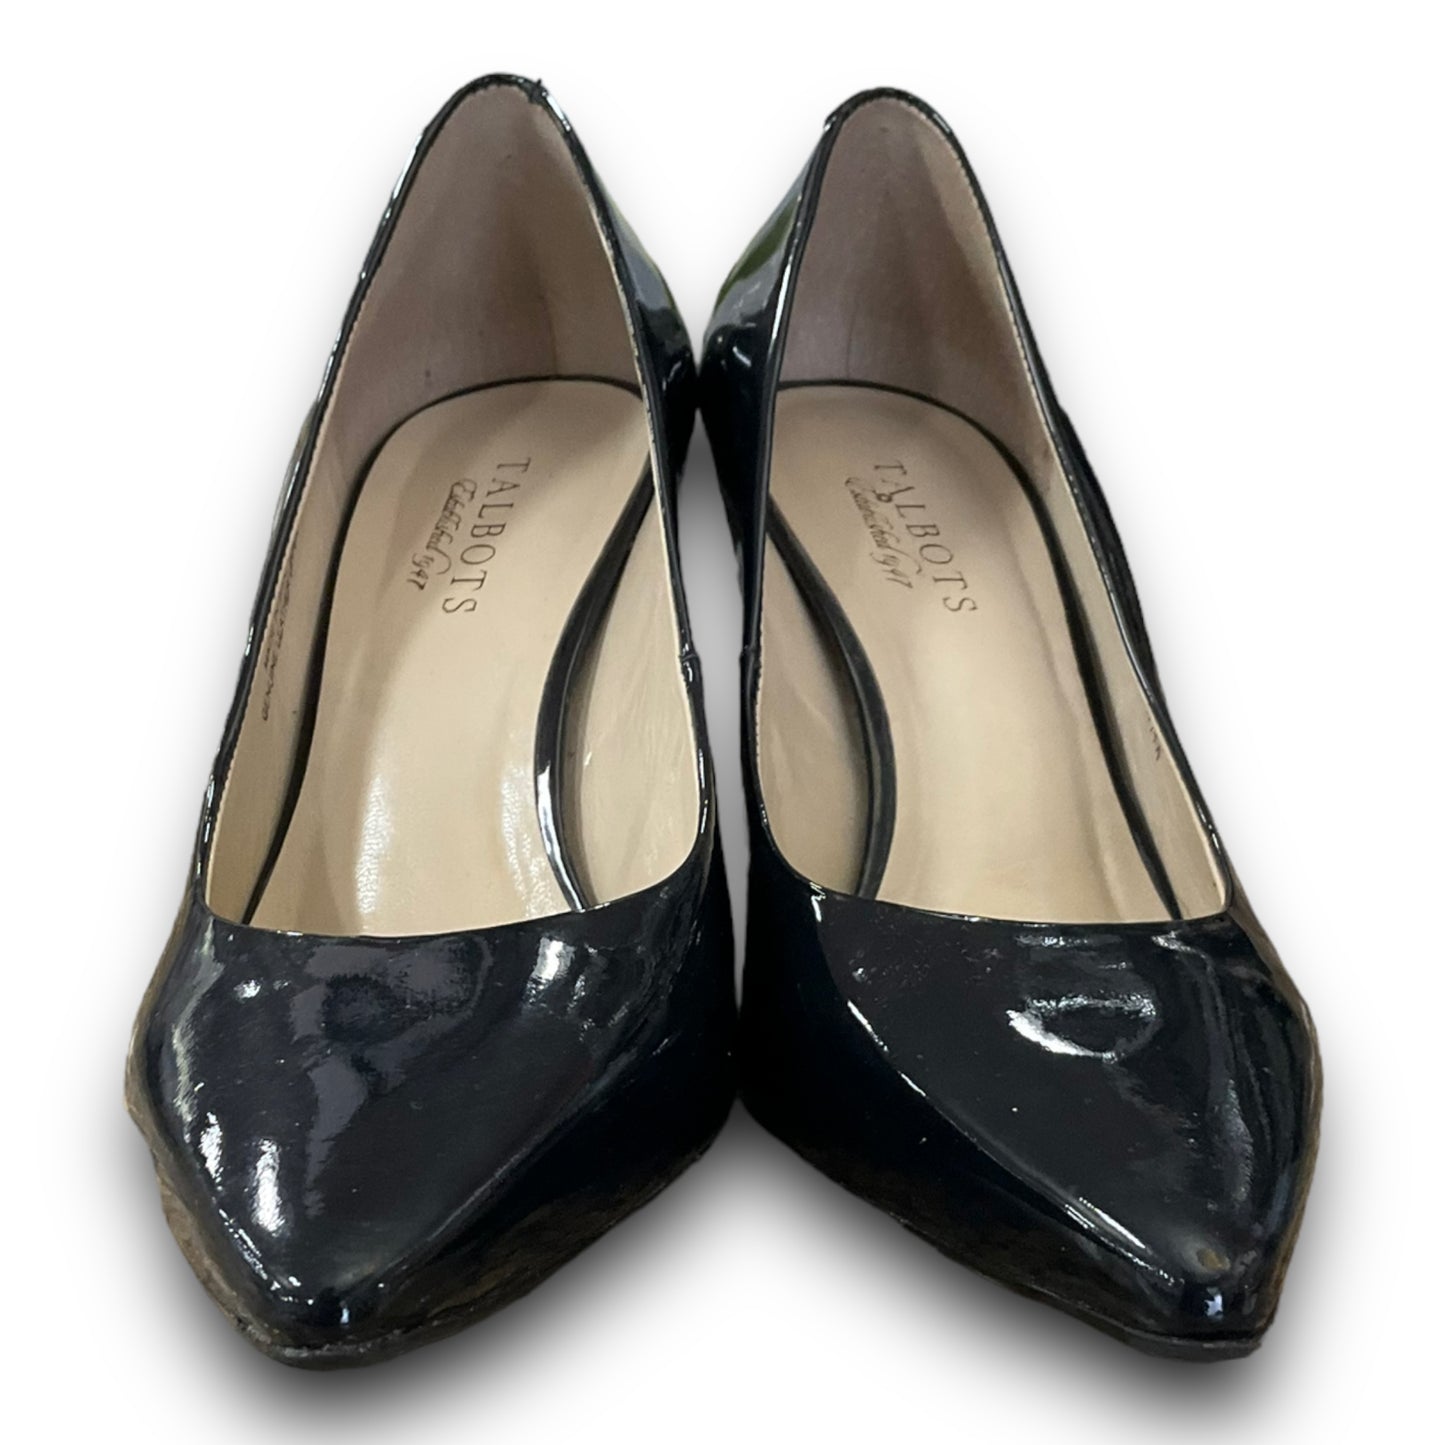 Shoes Heels Kitten By Talbots  Size: 8.5